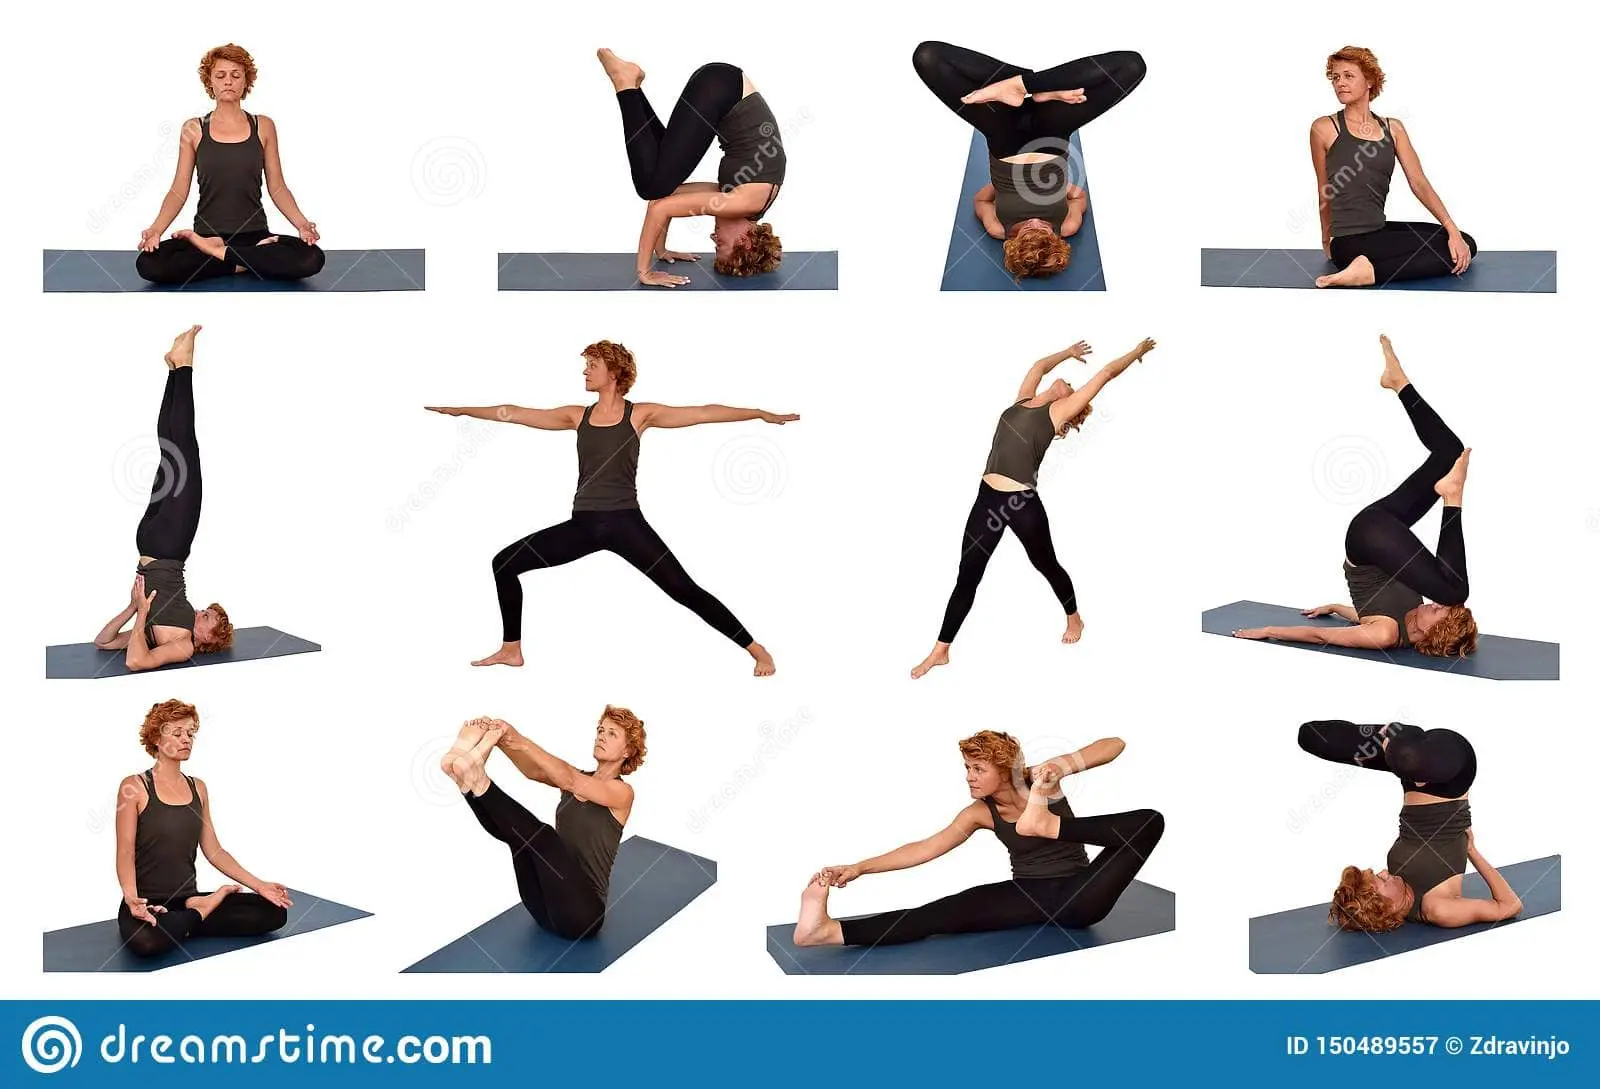 yoga para la columna vertebral - Qué deporte es bueno para la columna vertebral